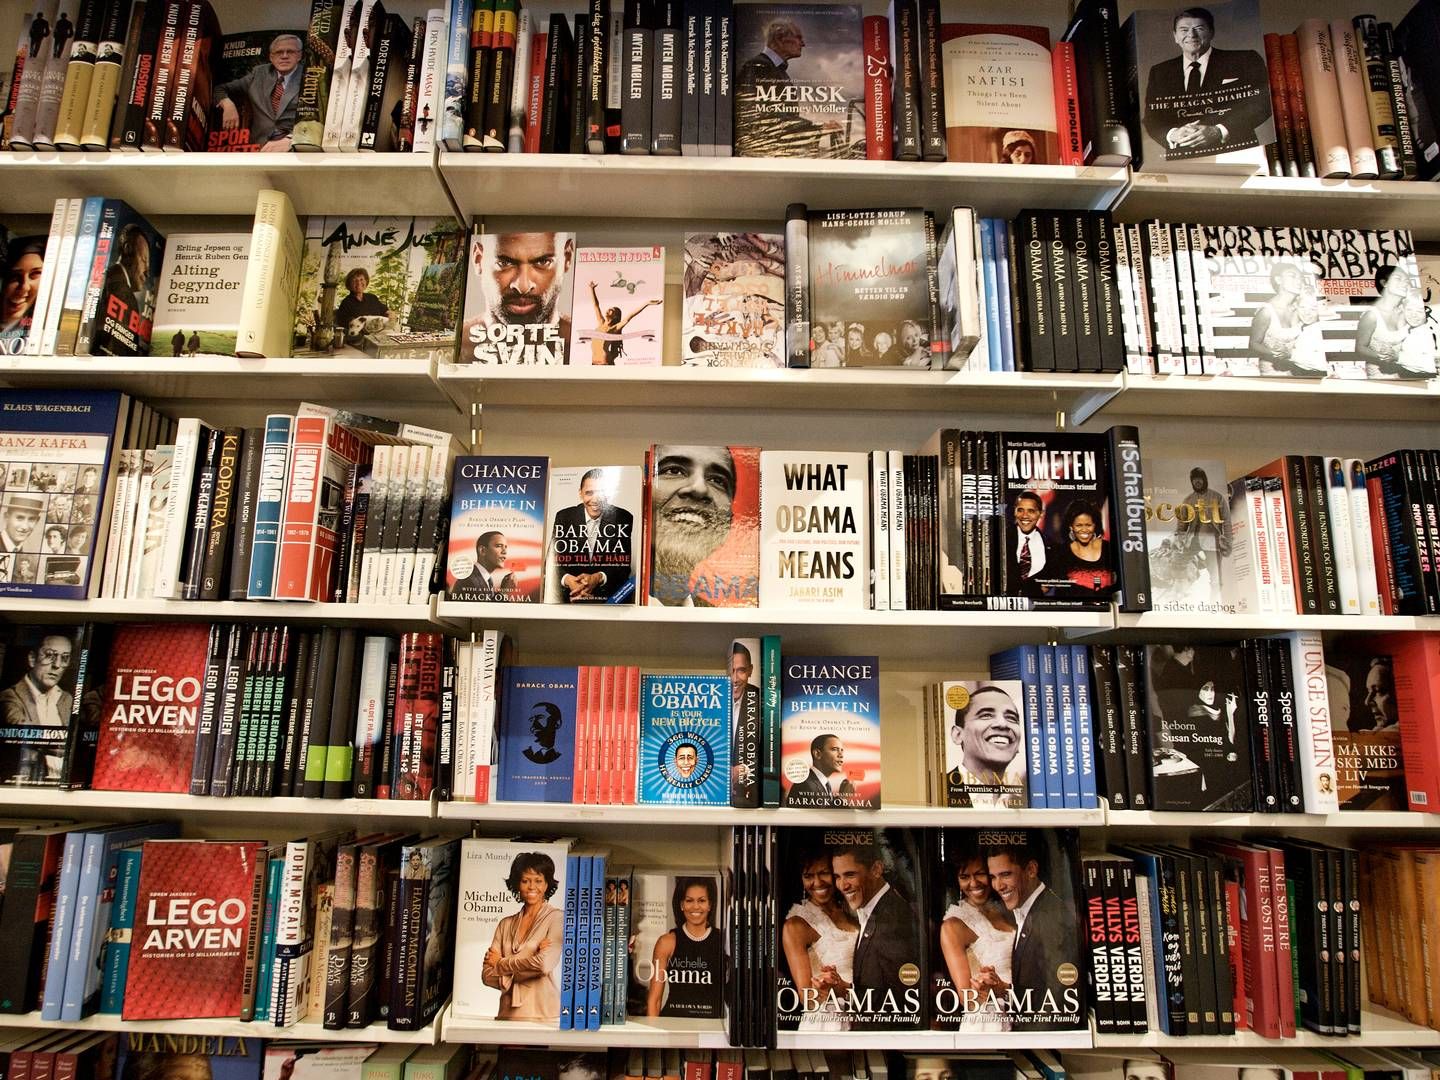 Forlaget Alvilda folder Karrusels salg i Sverige ind under sit eget navn og gør klar til et svensk fremstød, skriver Bogmarkedet. | Foto: Jens Dresling